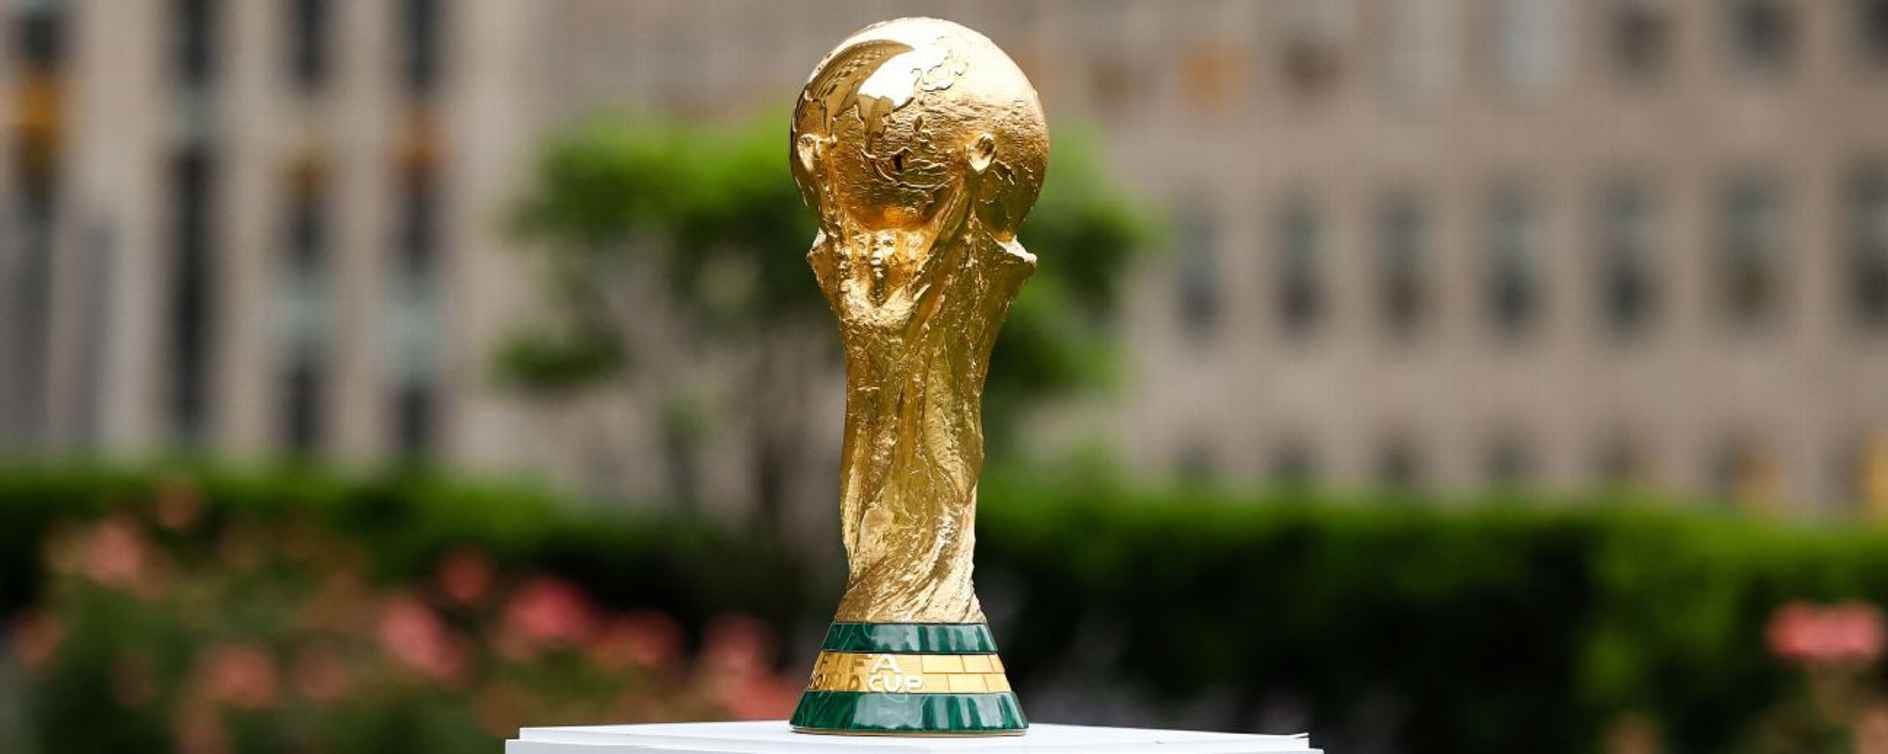 乌克兰顶级俱乐部希望伊朗退出世界杯